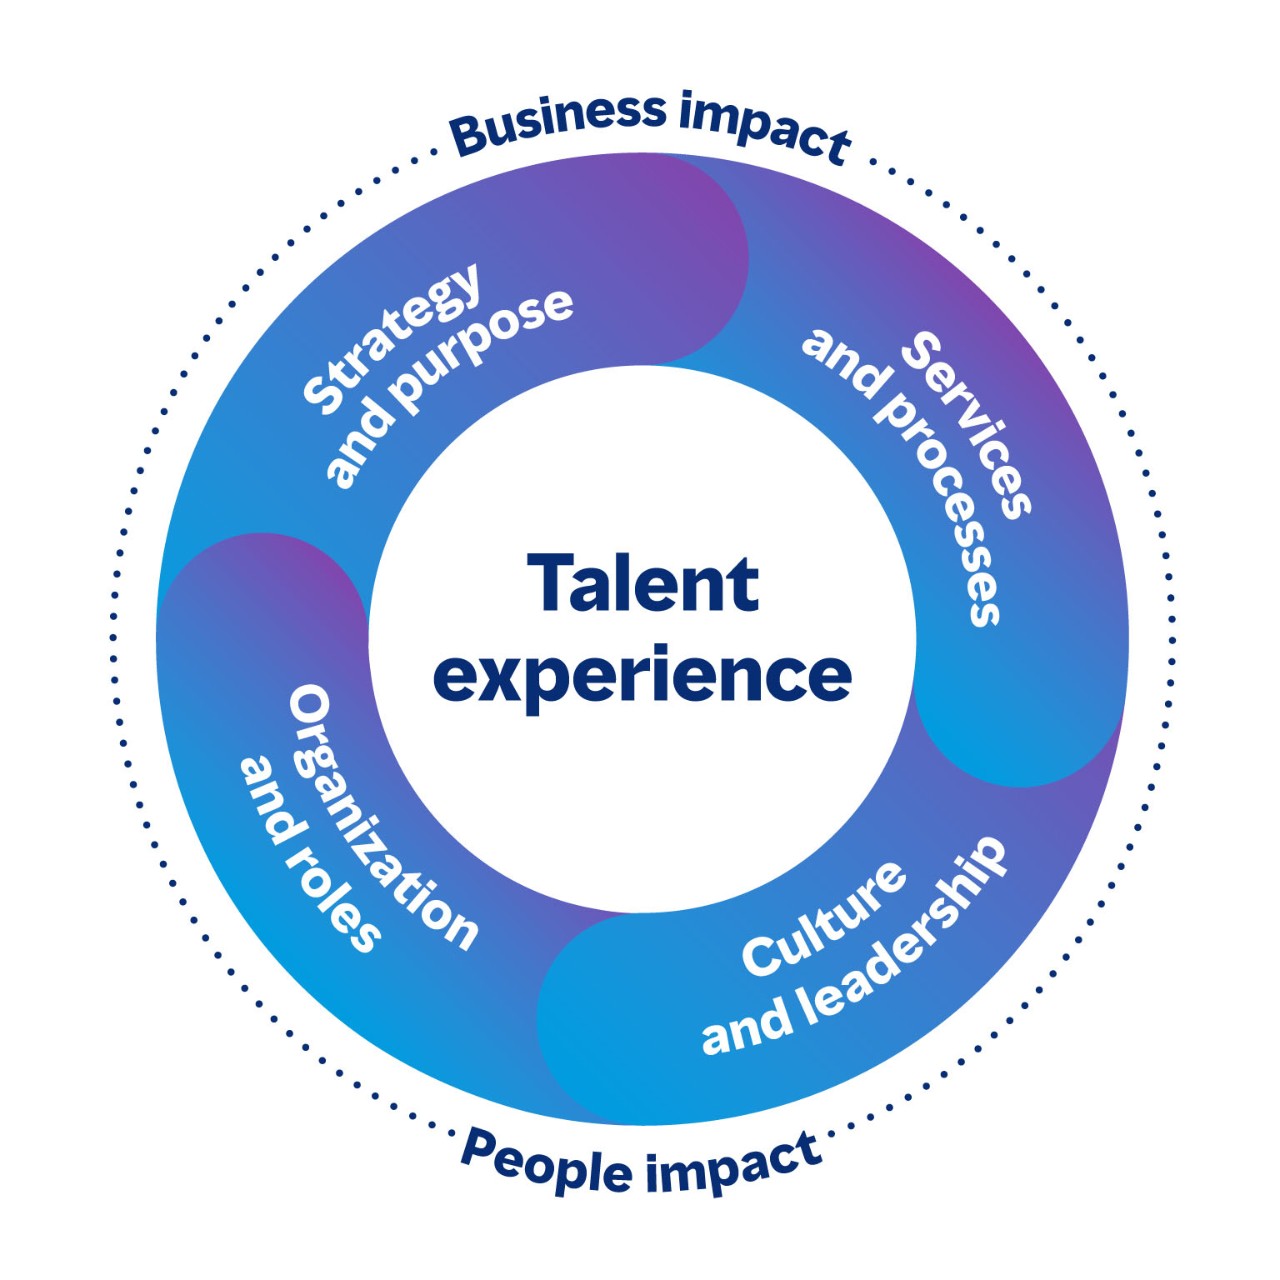 Imagem circular mostrando as áreas conectadas da experiência de talento que têm impacto nos negócios e nas pessoas. As quatro áreas são estratégia e propósito, serviços e processos, cultura e liderança, organização e funções.